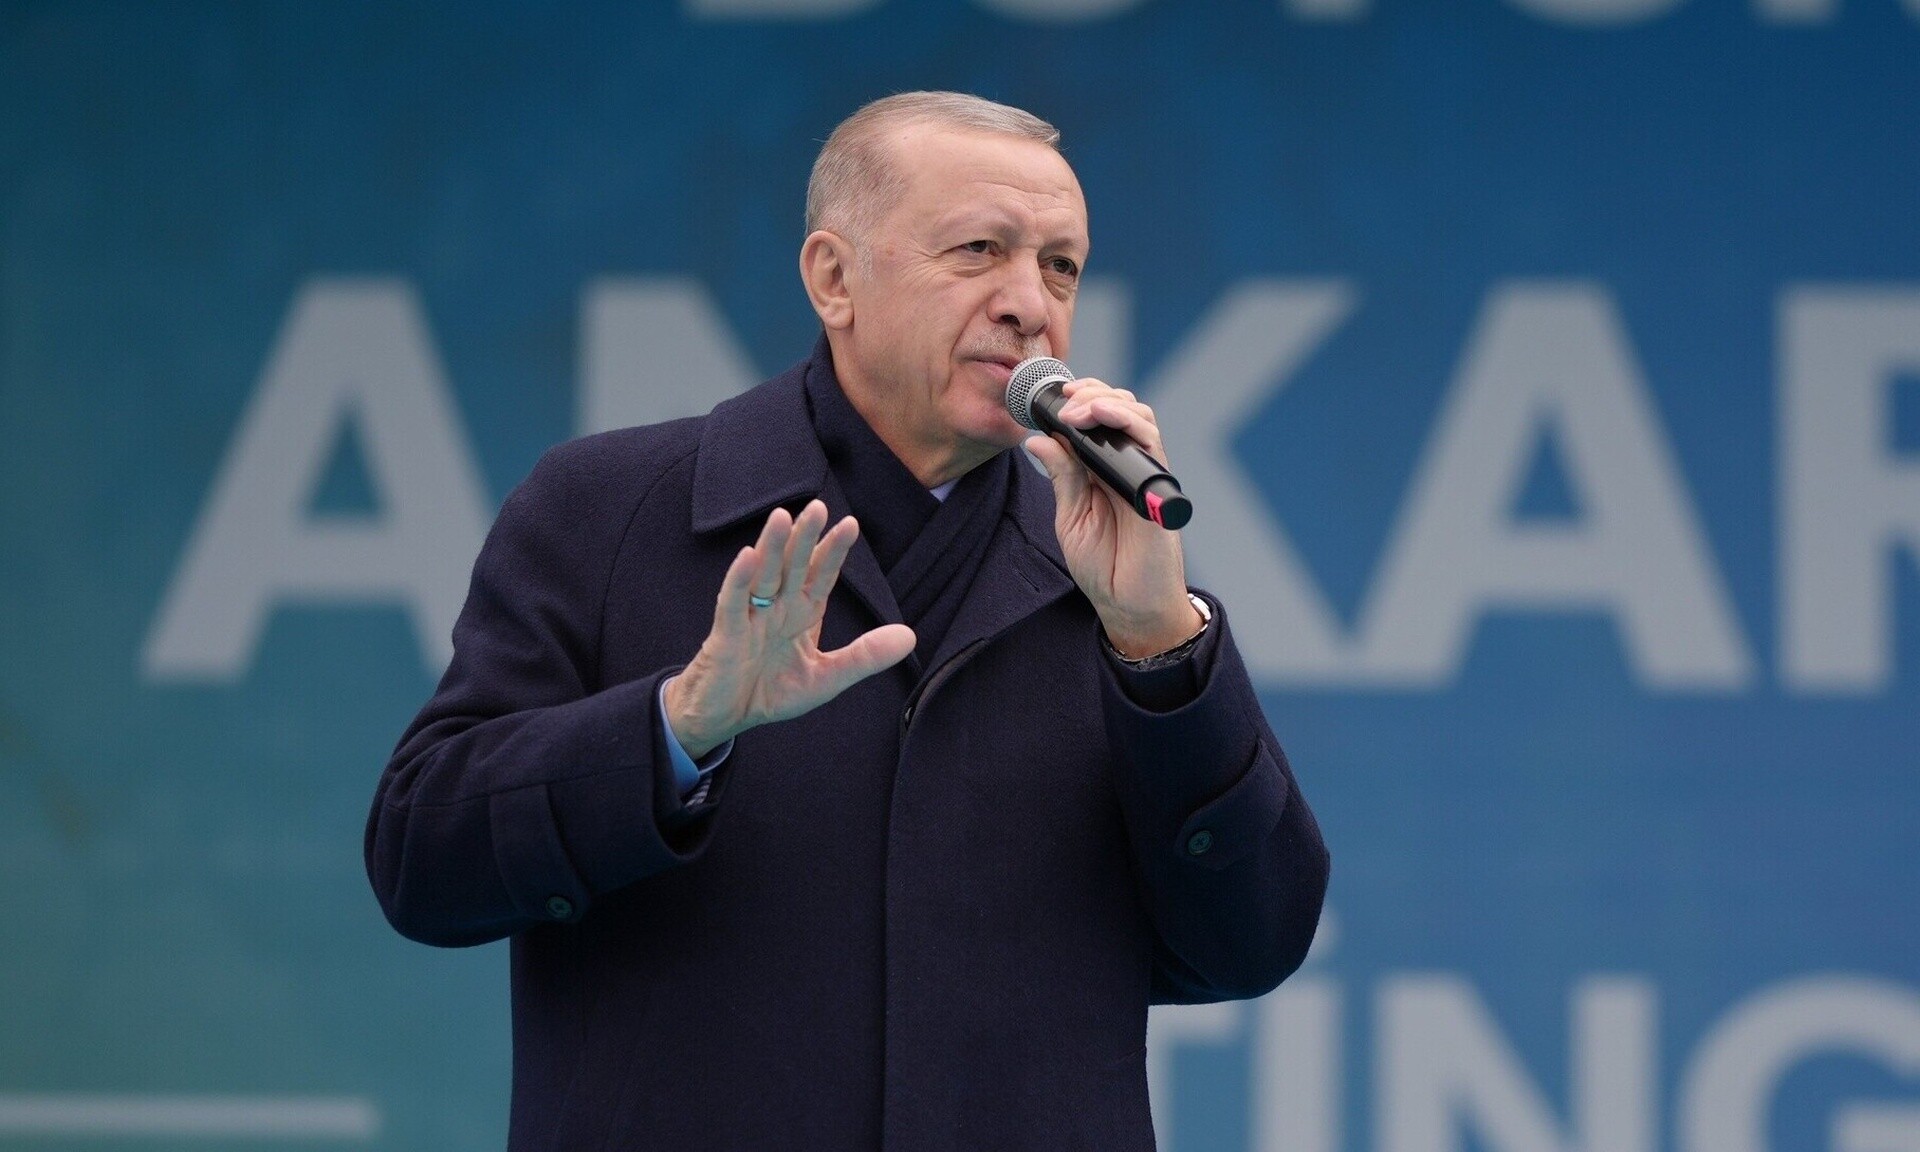 Τουρκικά ΜΜΕ: Ο Ερντογάν ακύρωσε το ταξίδι του στις ΗΠΑ